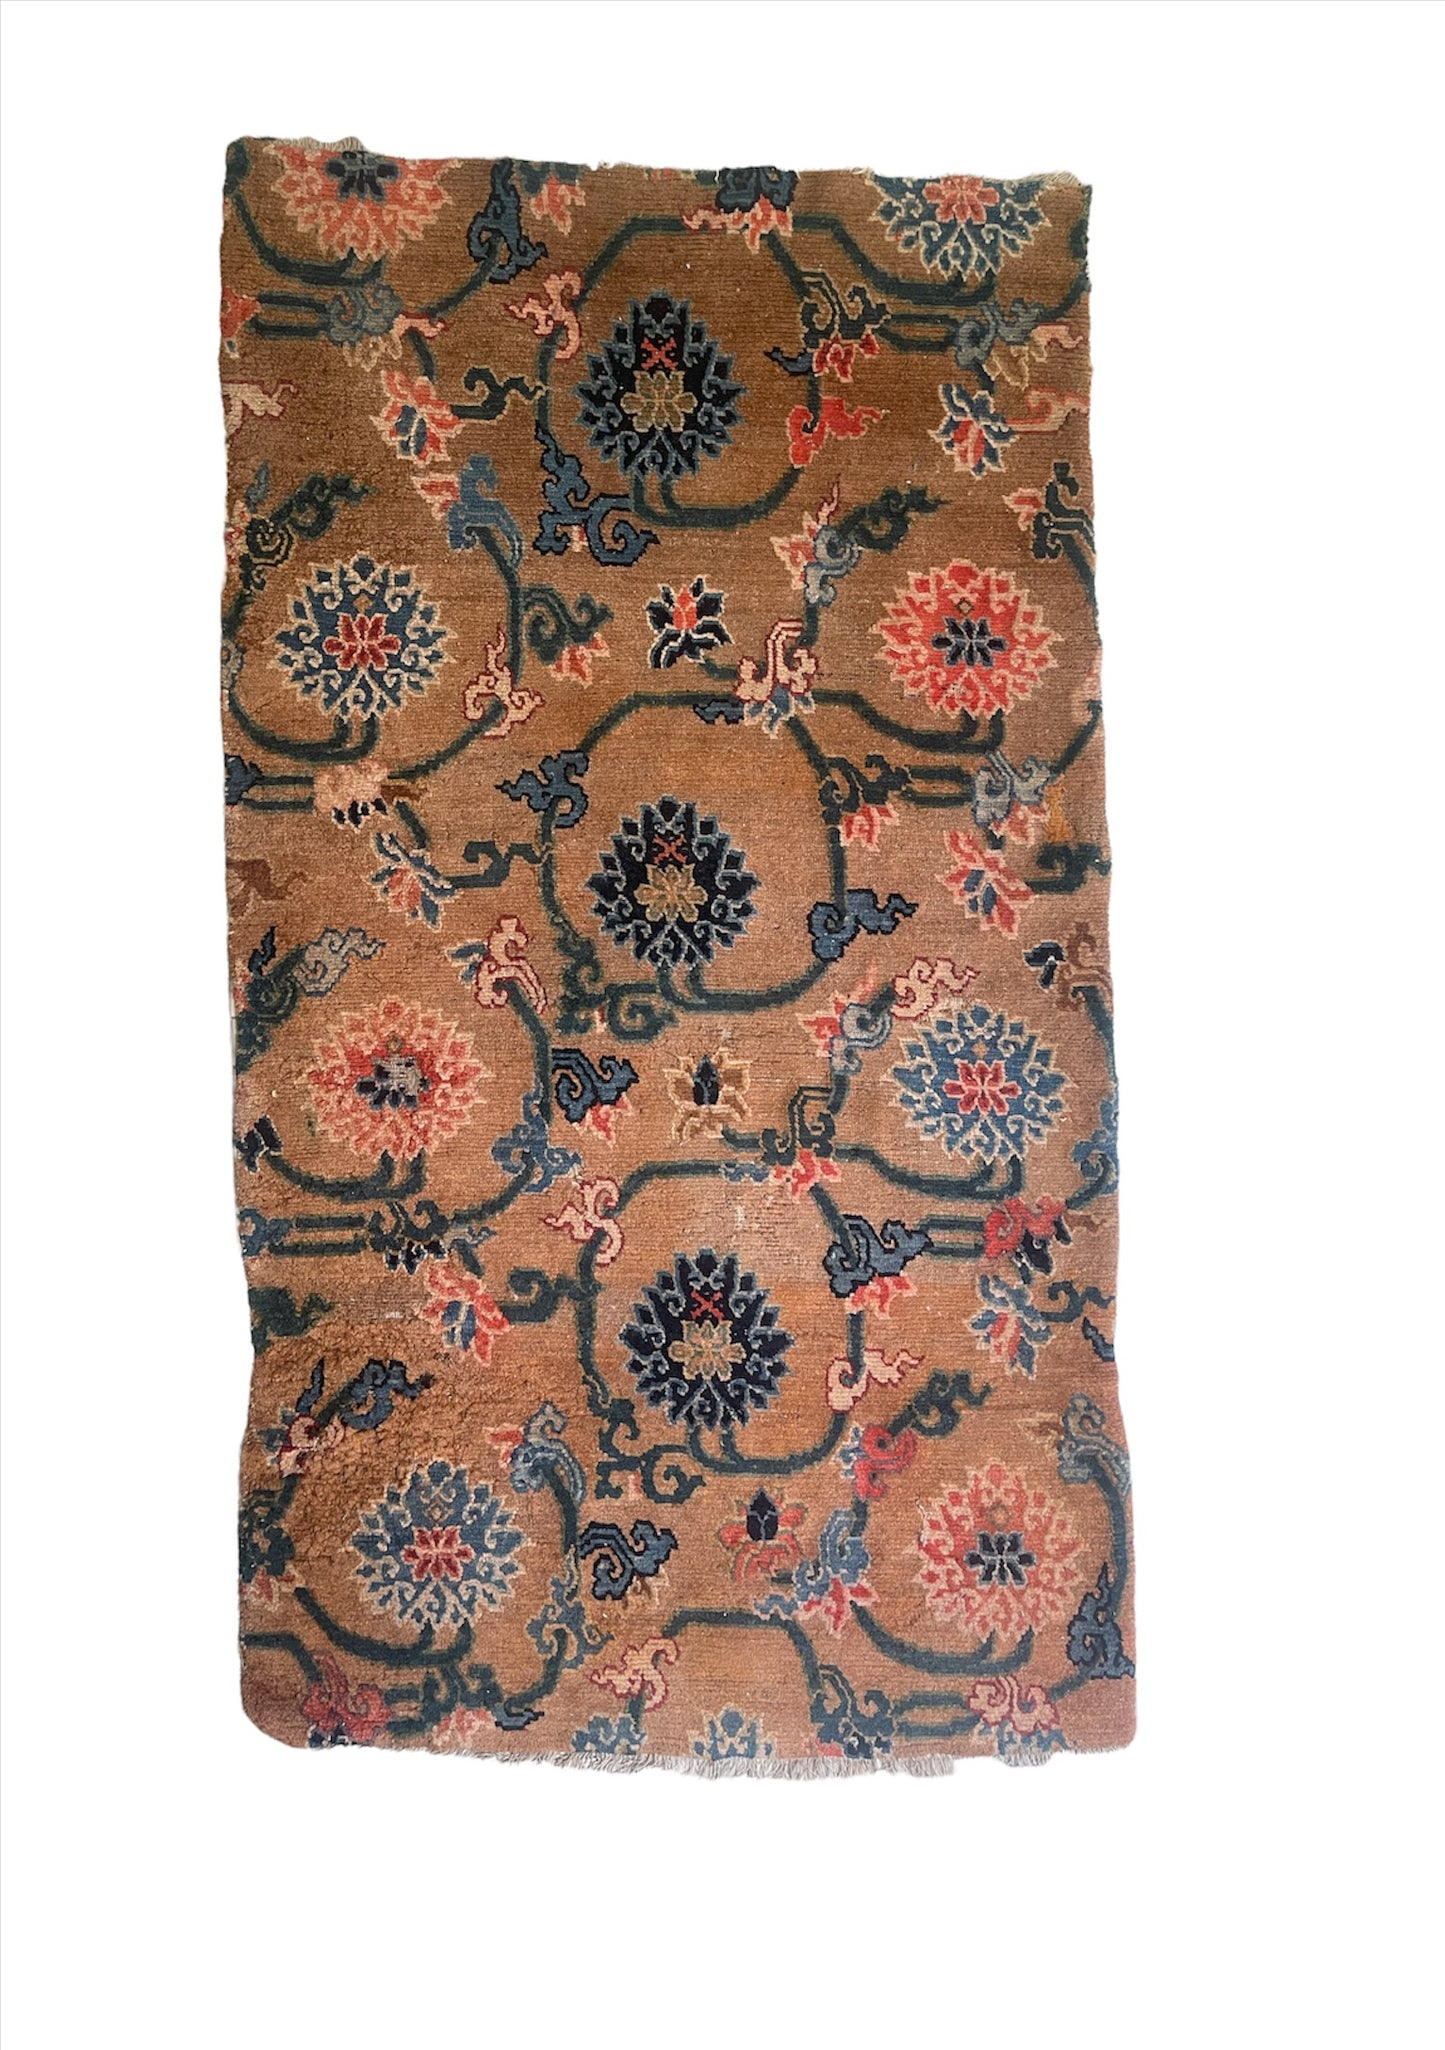 An antique  Tibetan  rug